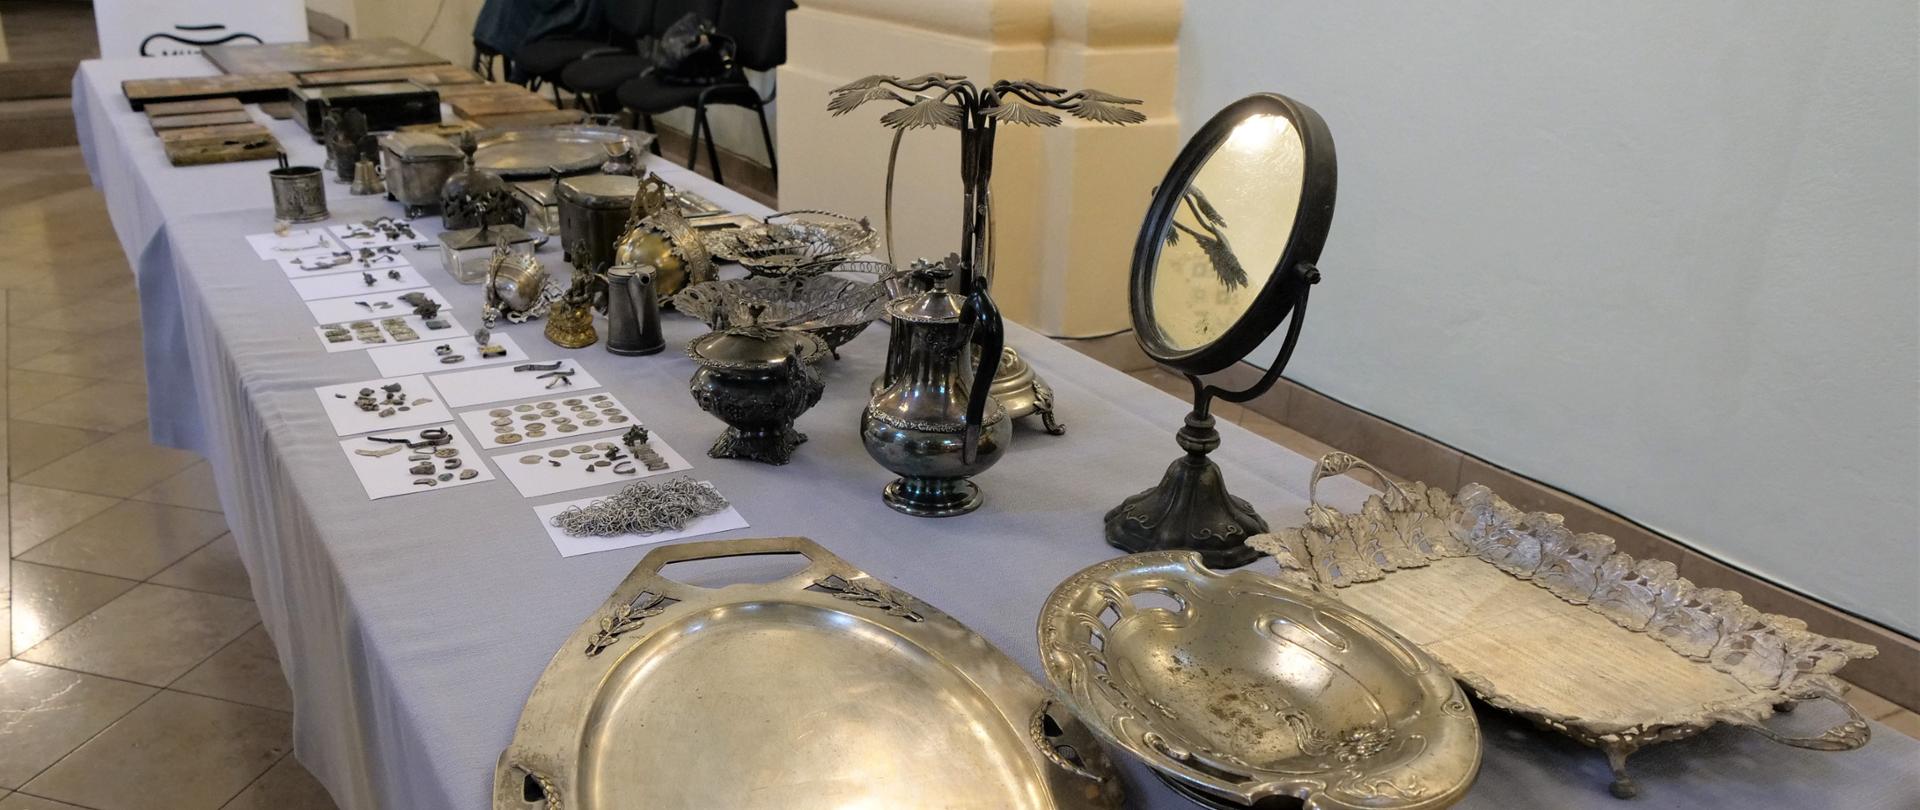 Zdjęcie przedstawia zabytkowe przedmioty ułożone na stole wewnątrz budynku. Na stole leżą złote patery, a także lustro, wazony i monety